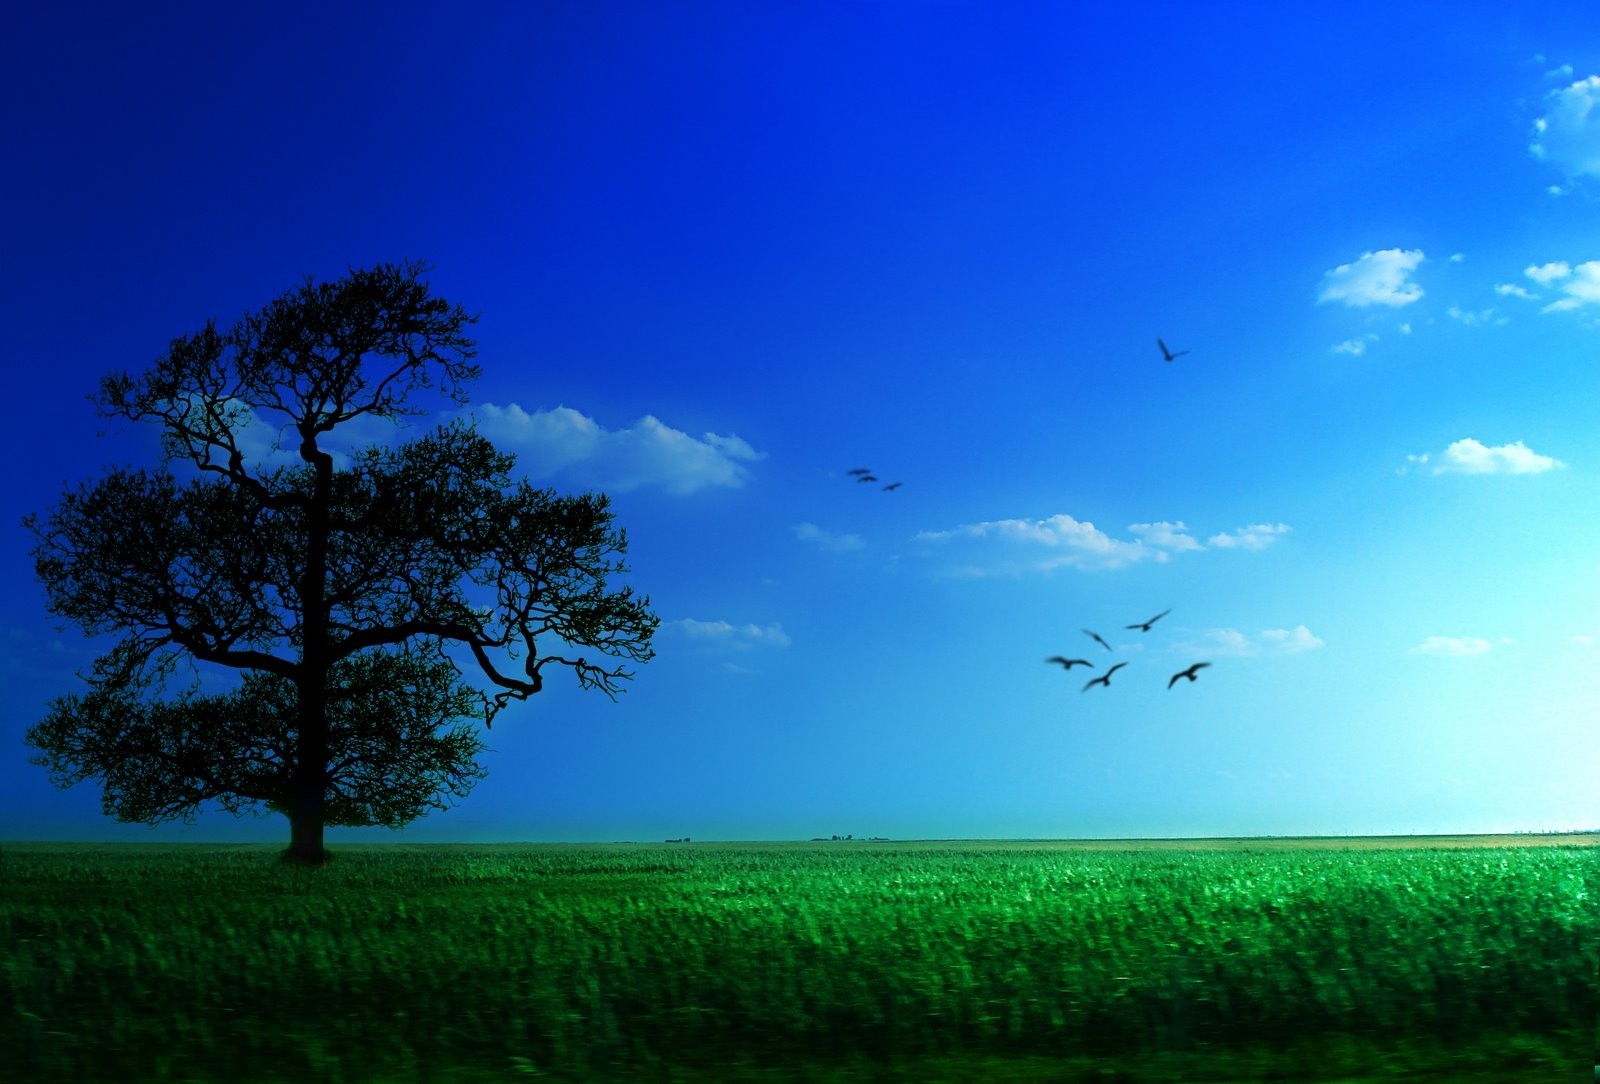 ogq wallpaper,himmel,natürliche landschaft,natur,grün,blau